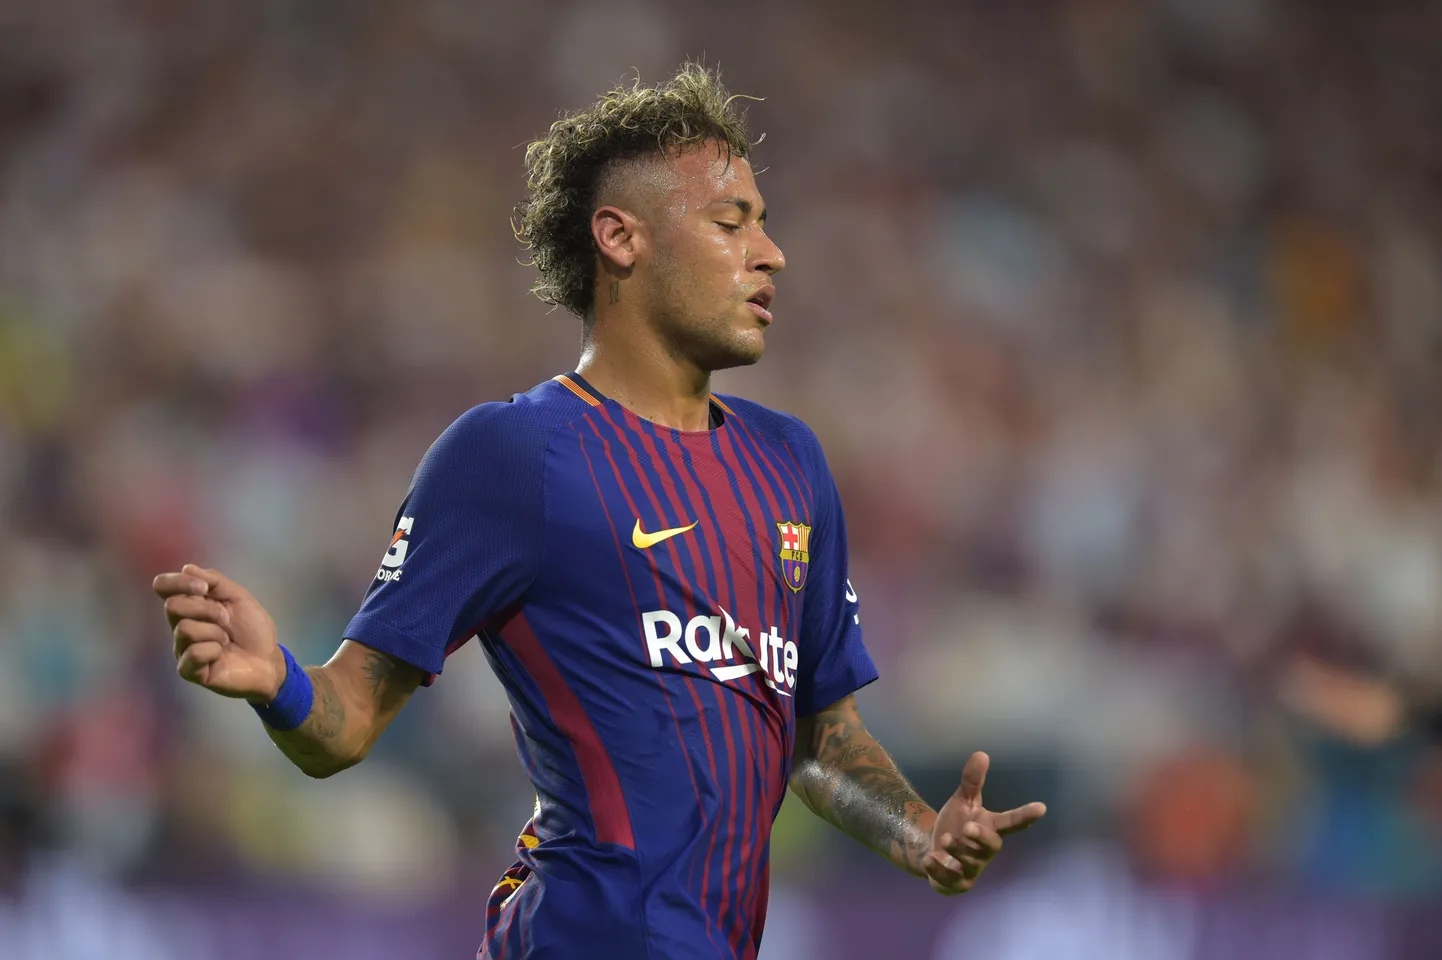 Barcelona kinnitas ametlikult, et Neymar ei ole enam nende mängija.